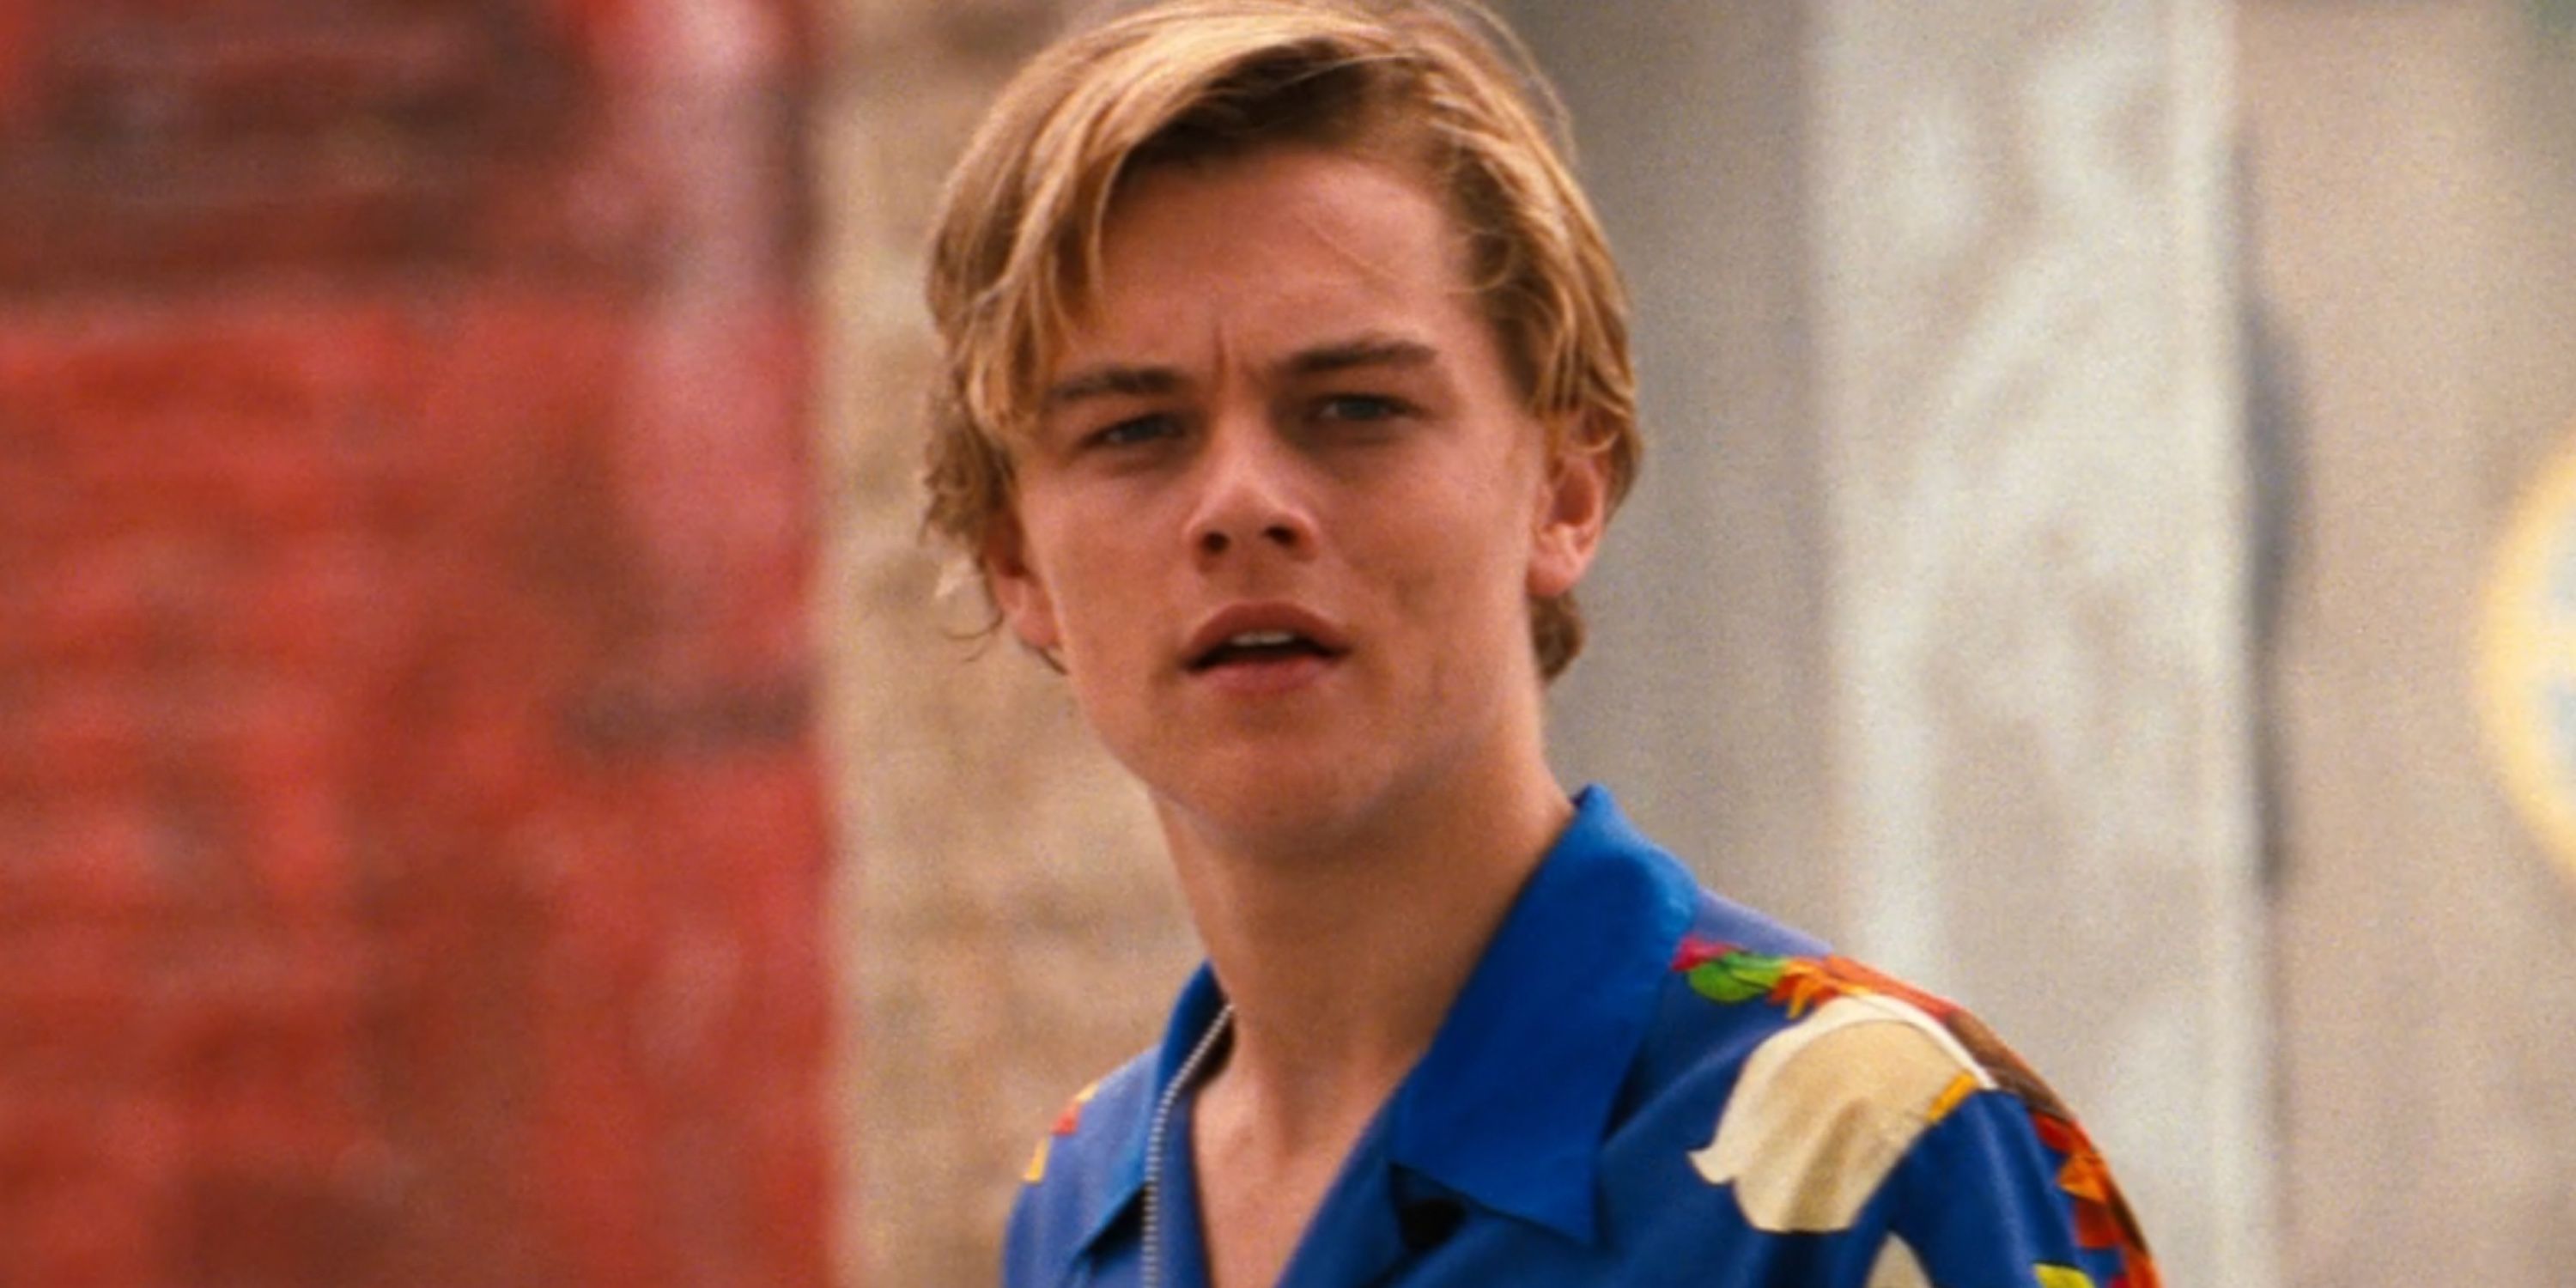 Leonardo DiCaprio as Romeo Montague in Romeo + Juliet